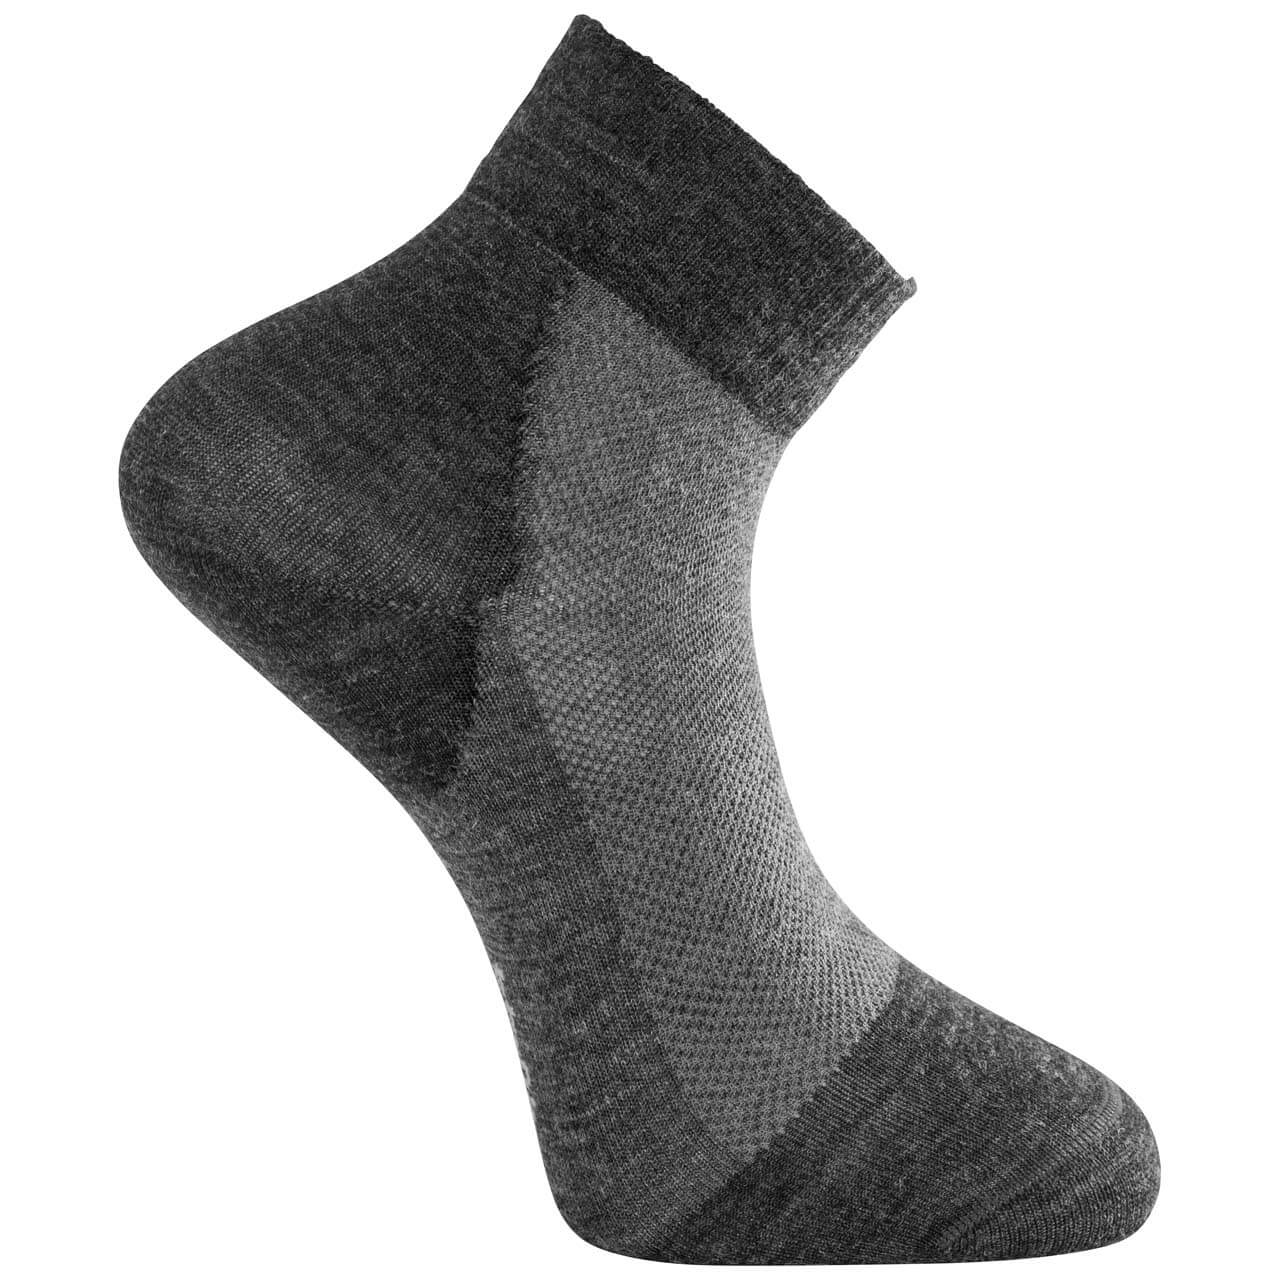 Woolpower Skilled Liner Short - Dark Grey/Grey, 36-39